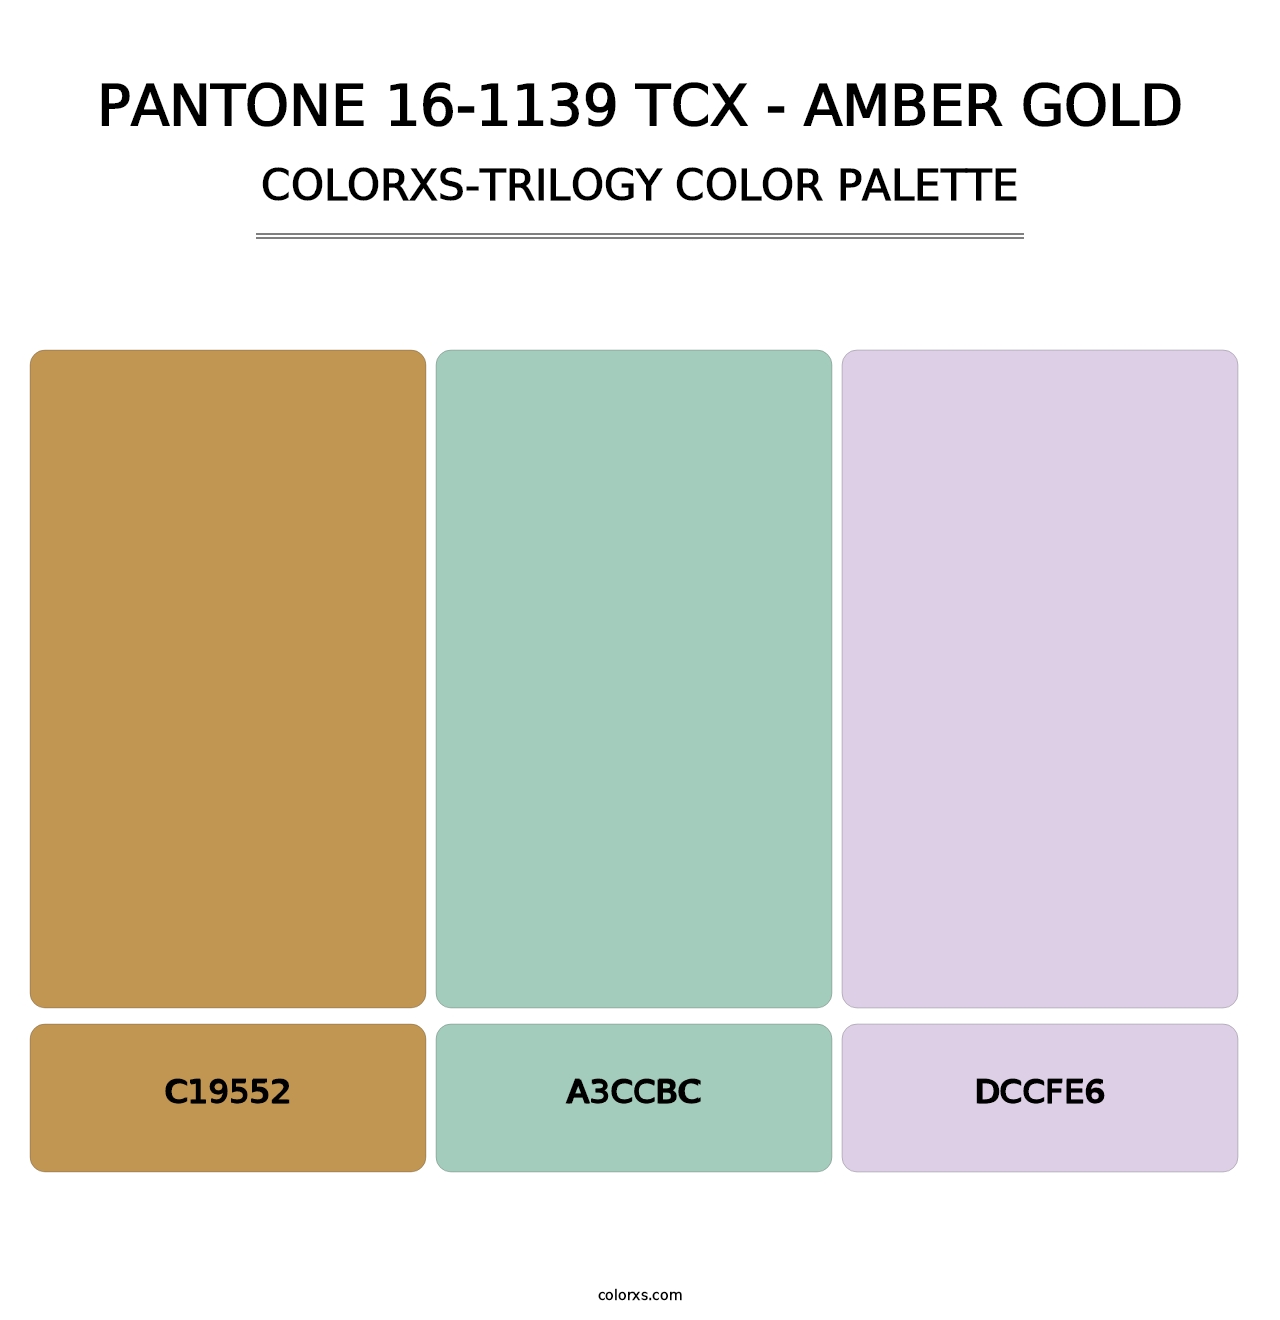 PANTONE 16-1139 TCX - Amber Gold - Colorxs Trilogy Palette